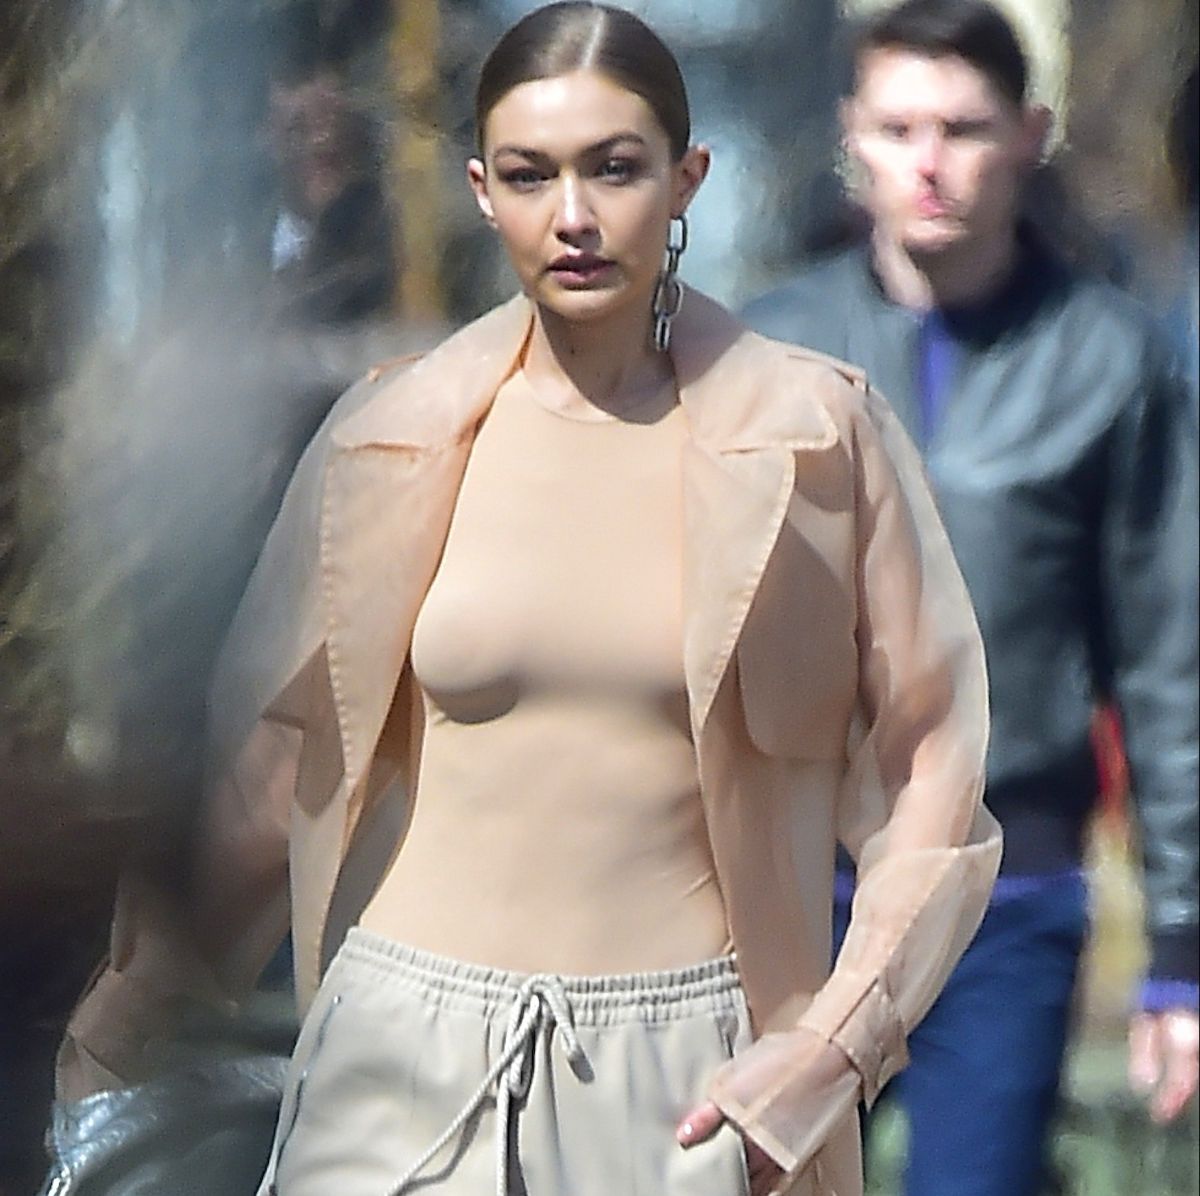 Progreso Concentración Cambio Fotos: Captaron a la modelo Gigi Hadid sin ropa interior - La Opinión